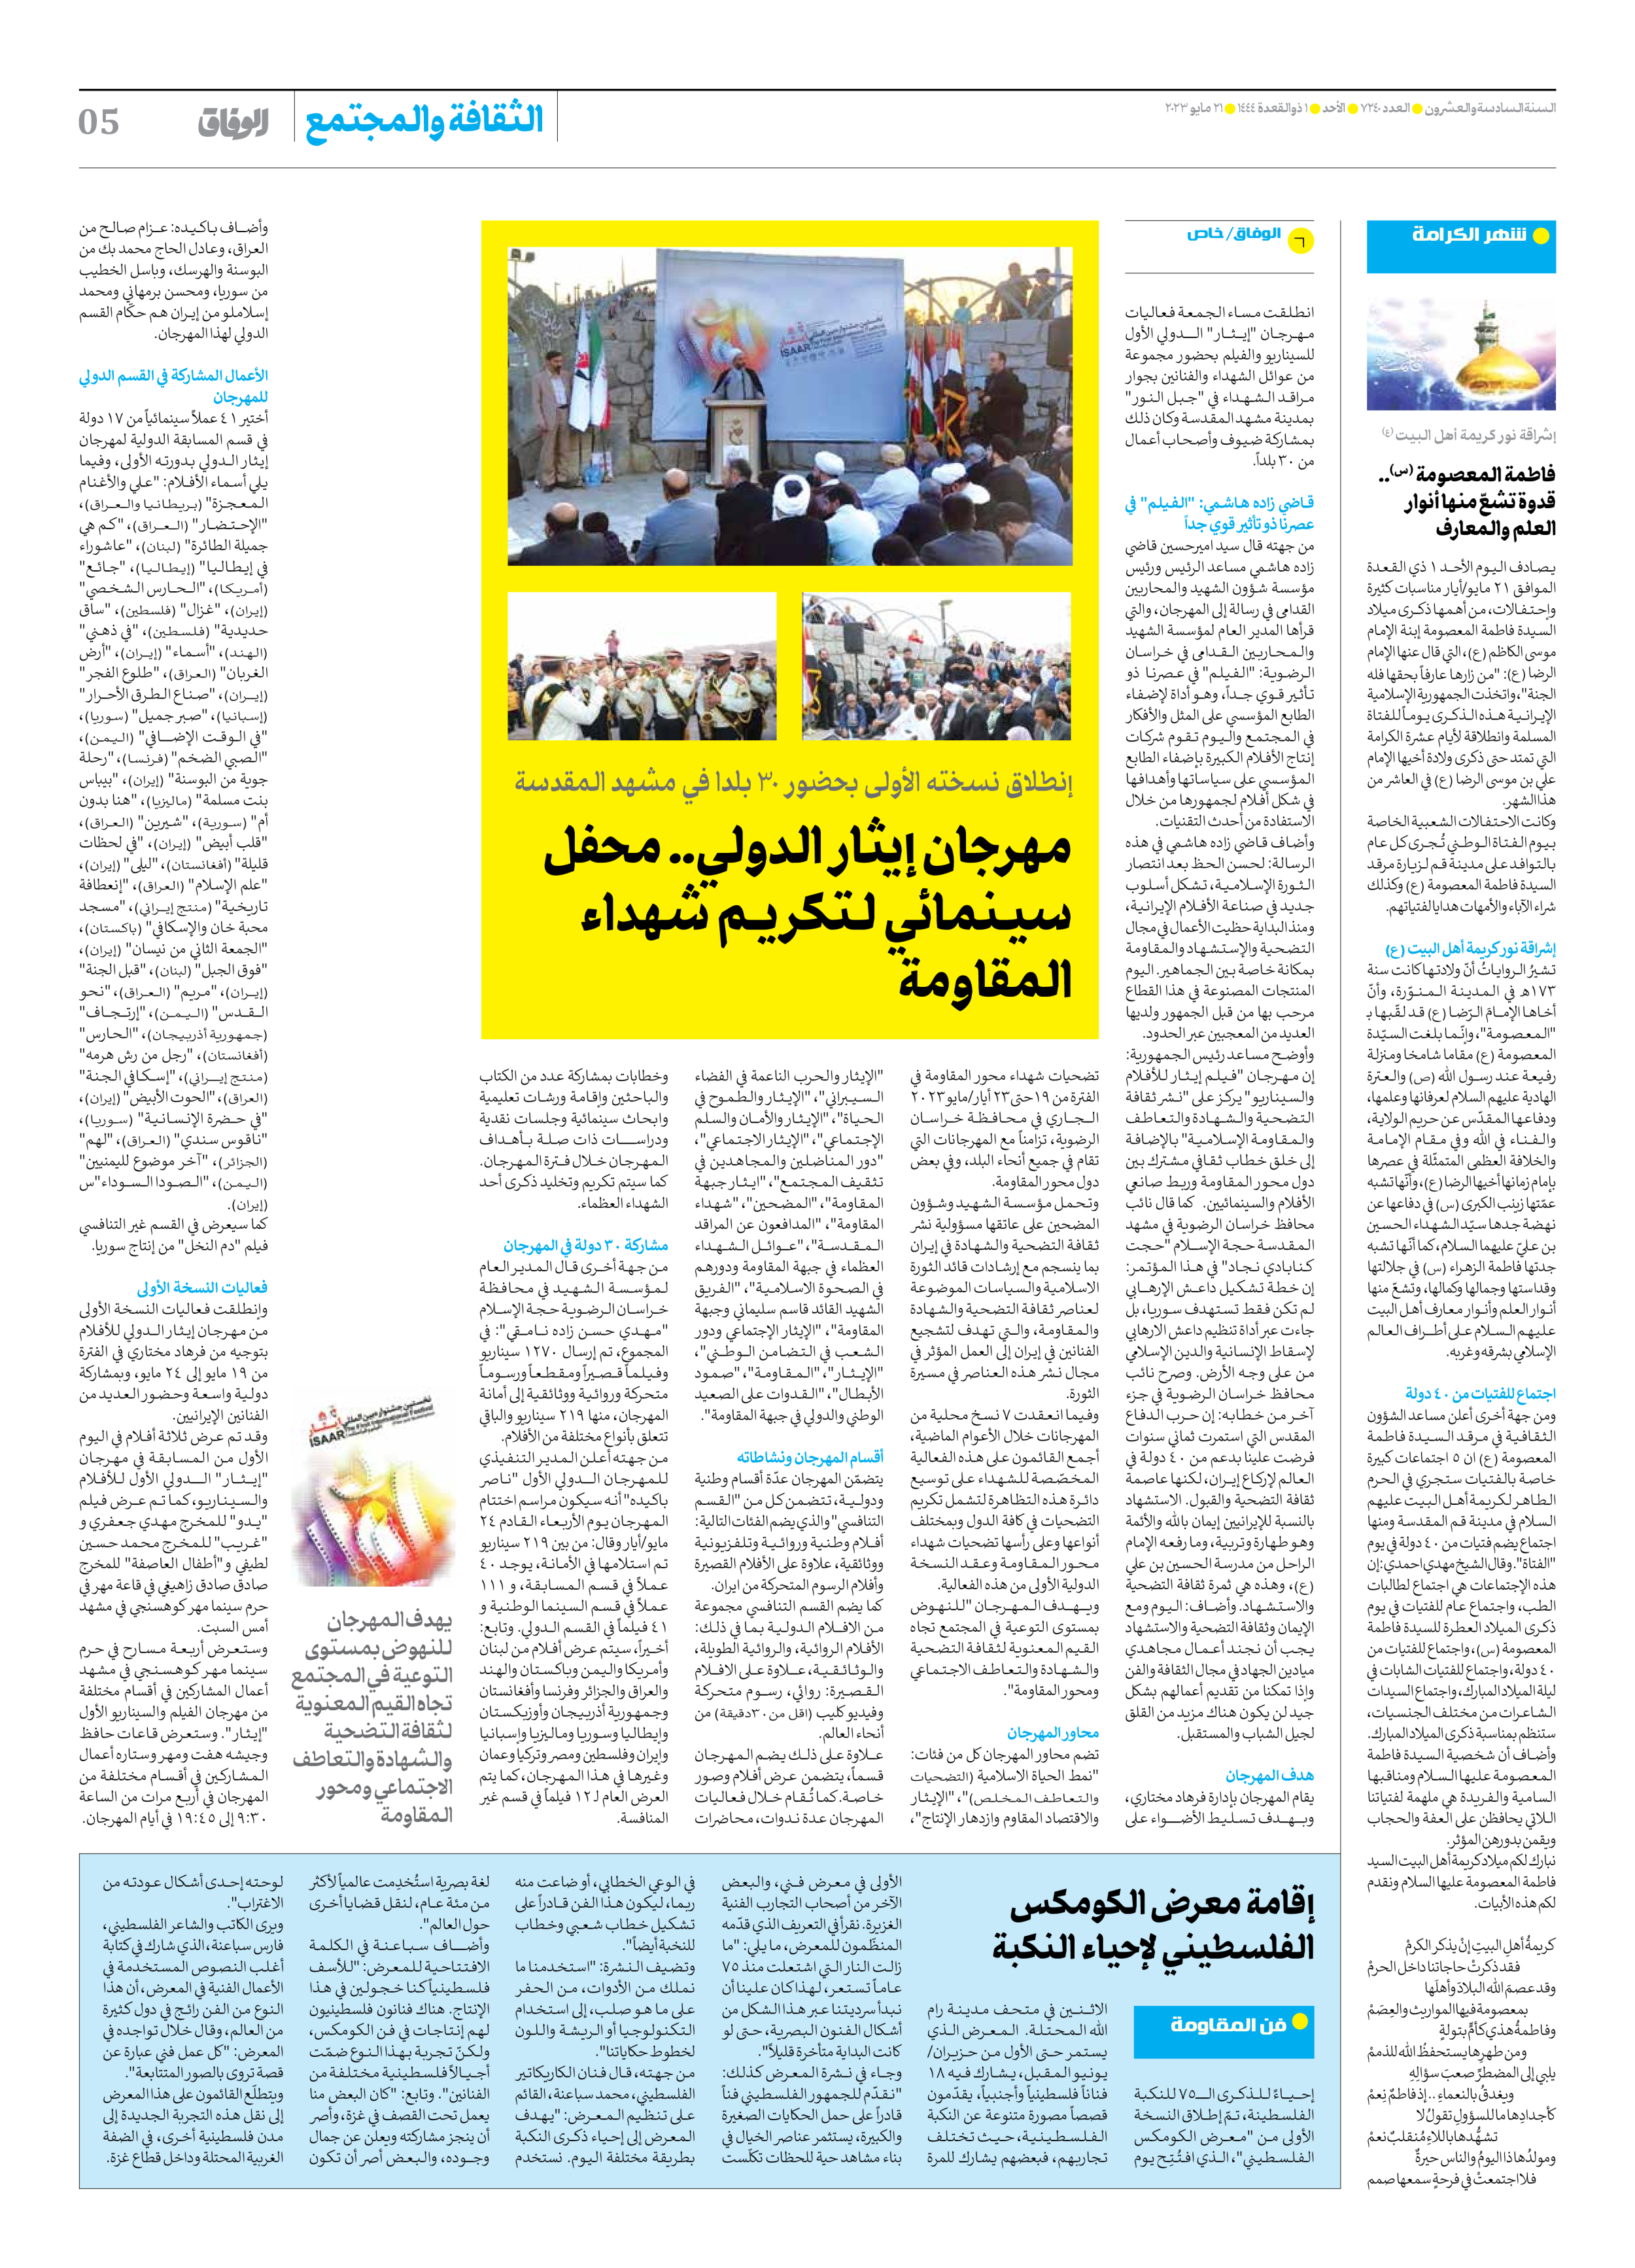 صحیفة ایران الدولیة الوفاق - العدد سبعة آلاف ومائتان وأربعون - ٢١ مايو ٢٠٢٣ - الصفحة ٥